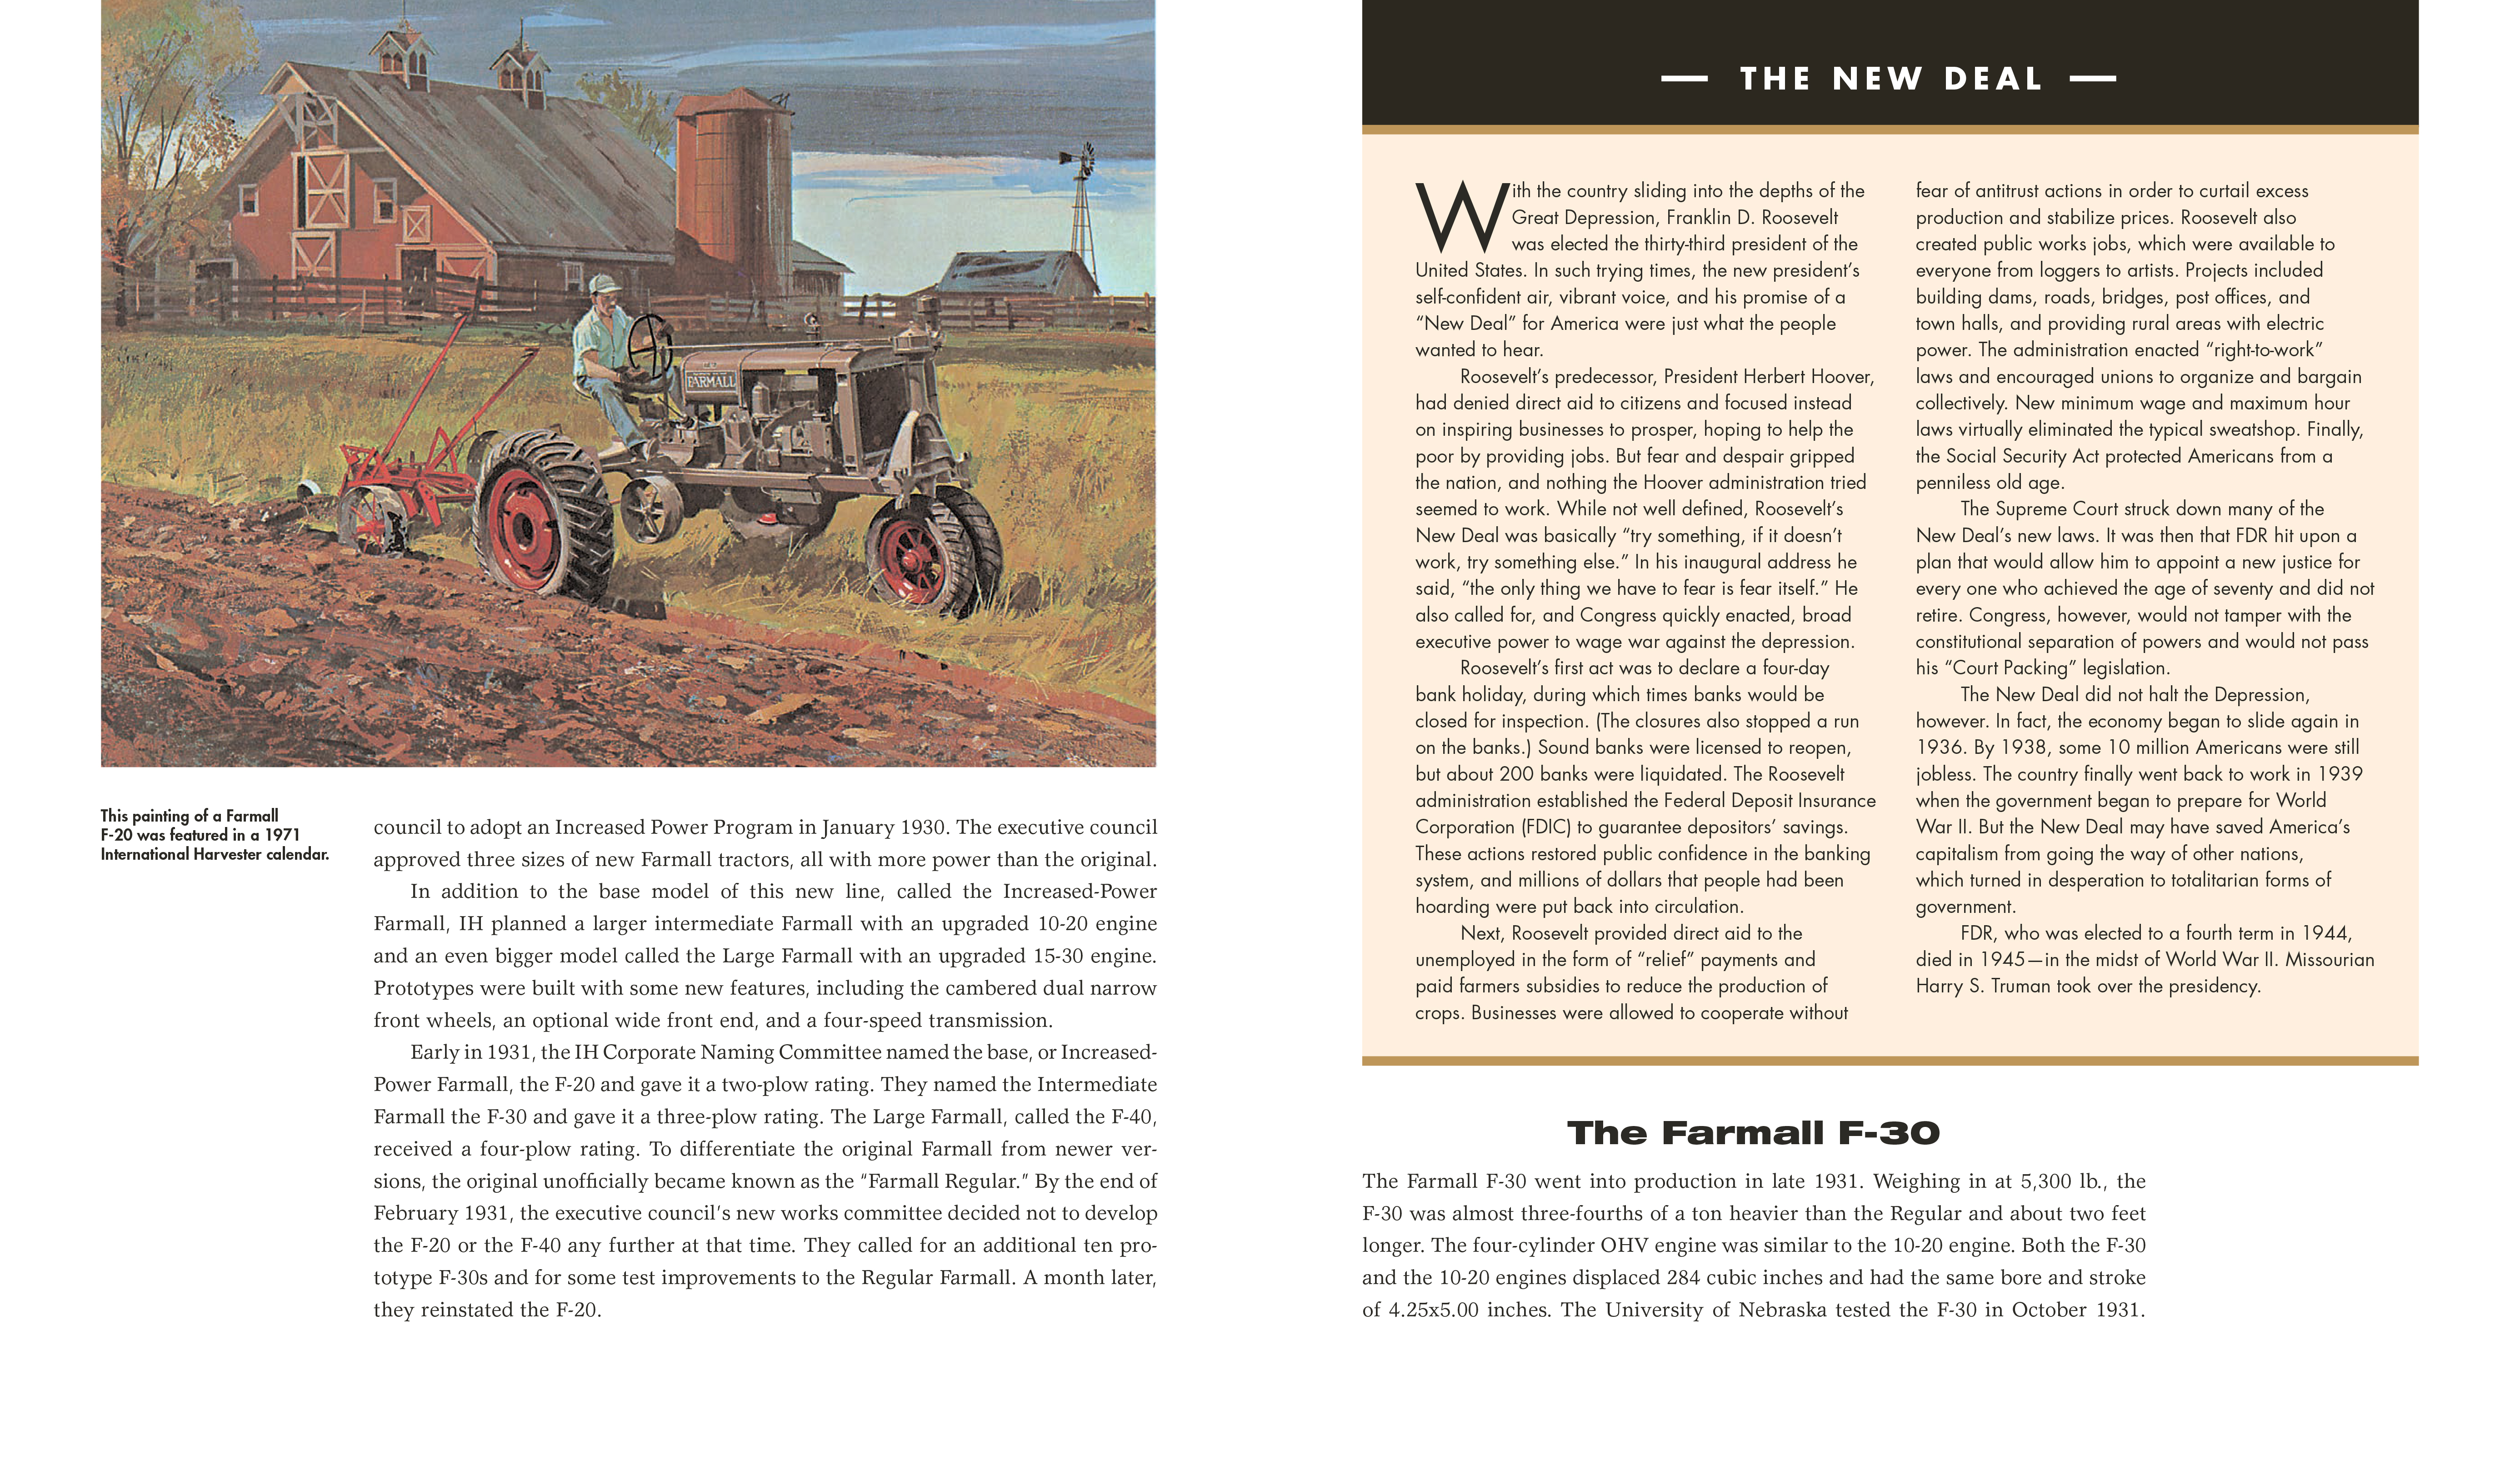 The Complete Book of Farmall Tractors